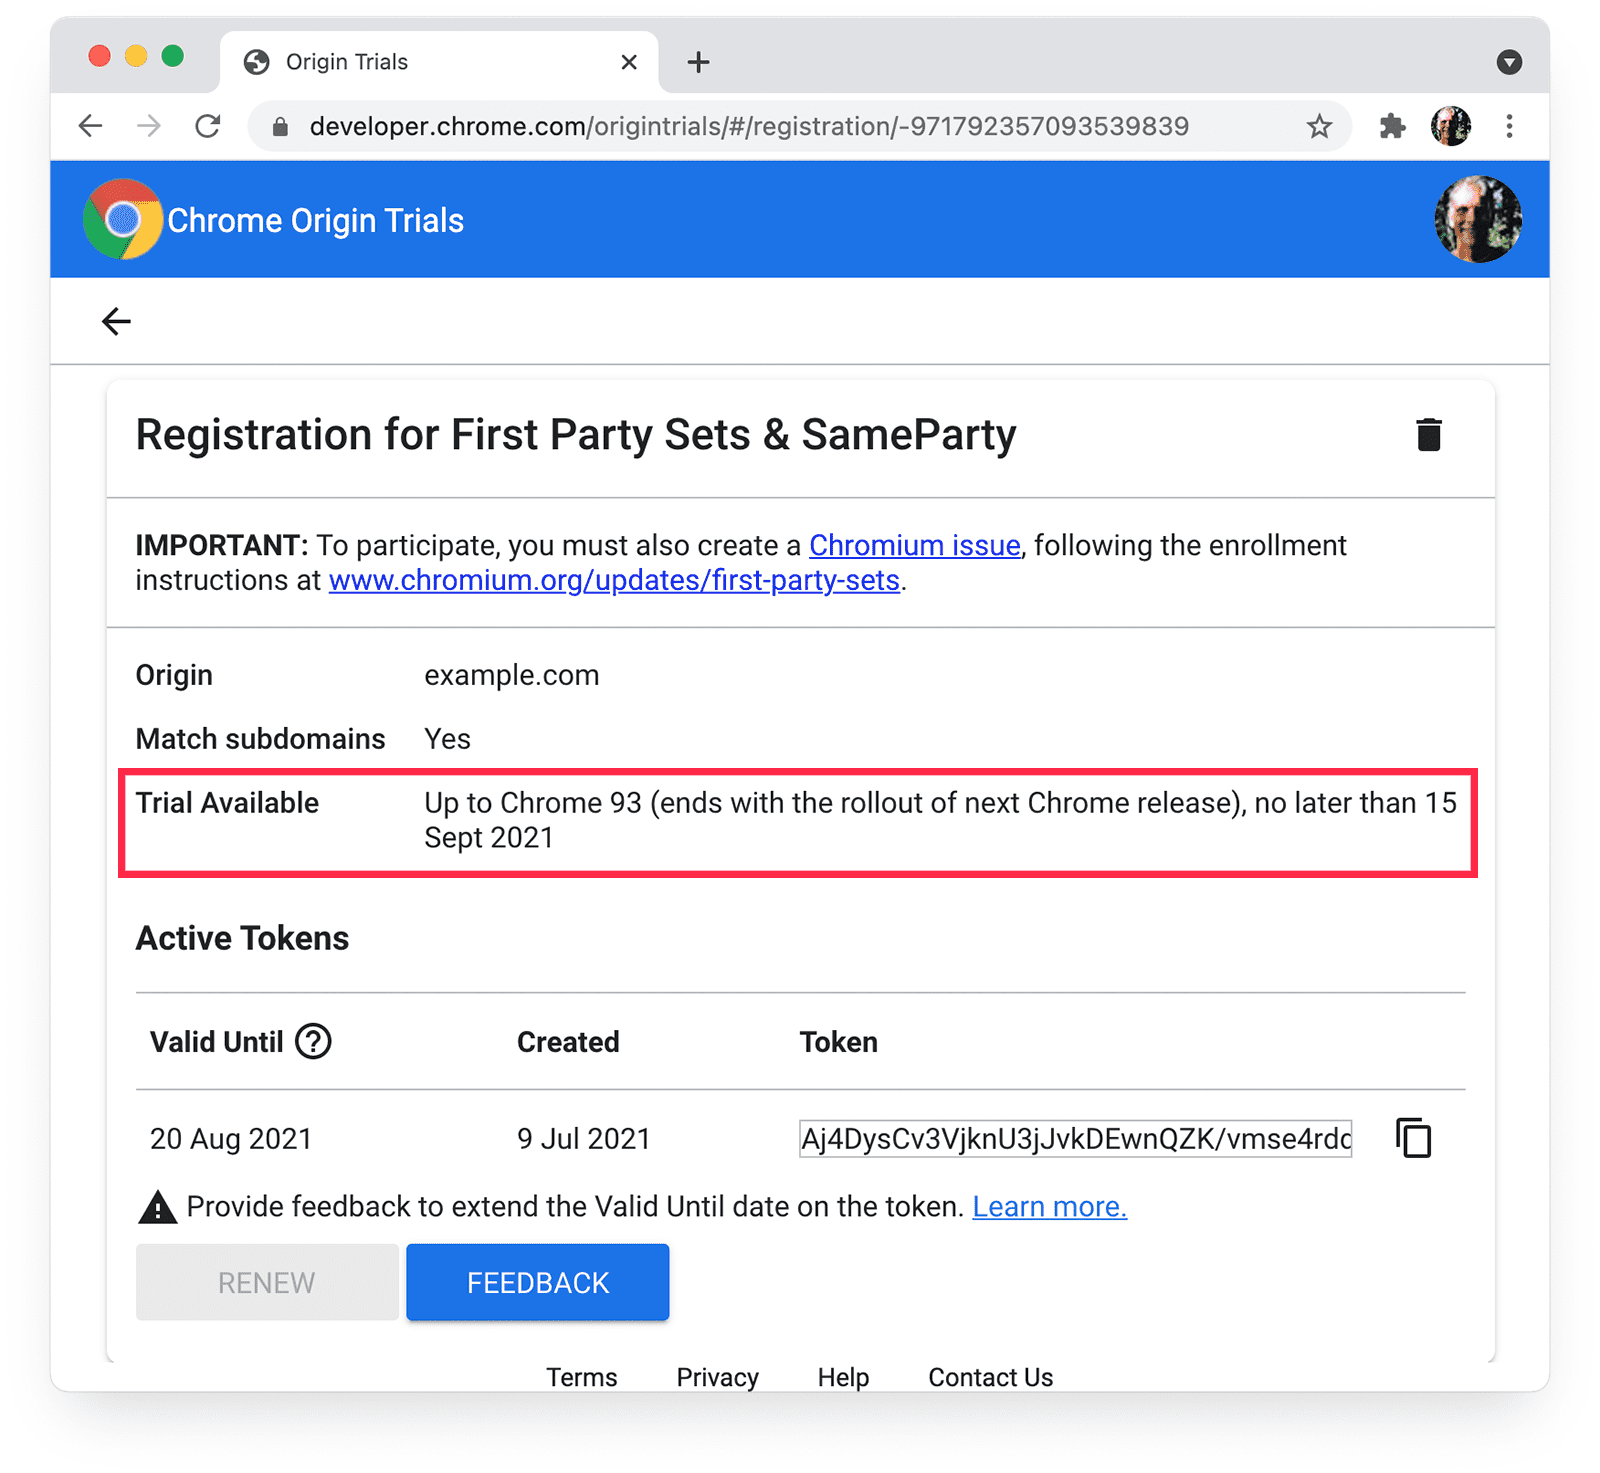 Chrome-Ursprungstests
Seite für First-Party-Sets und SameParty mit hervorgehobenen Details zum Testzeitraum.